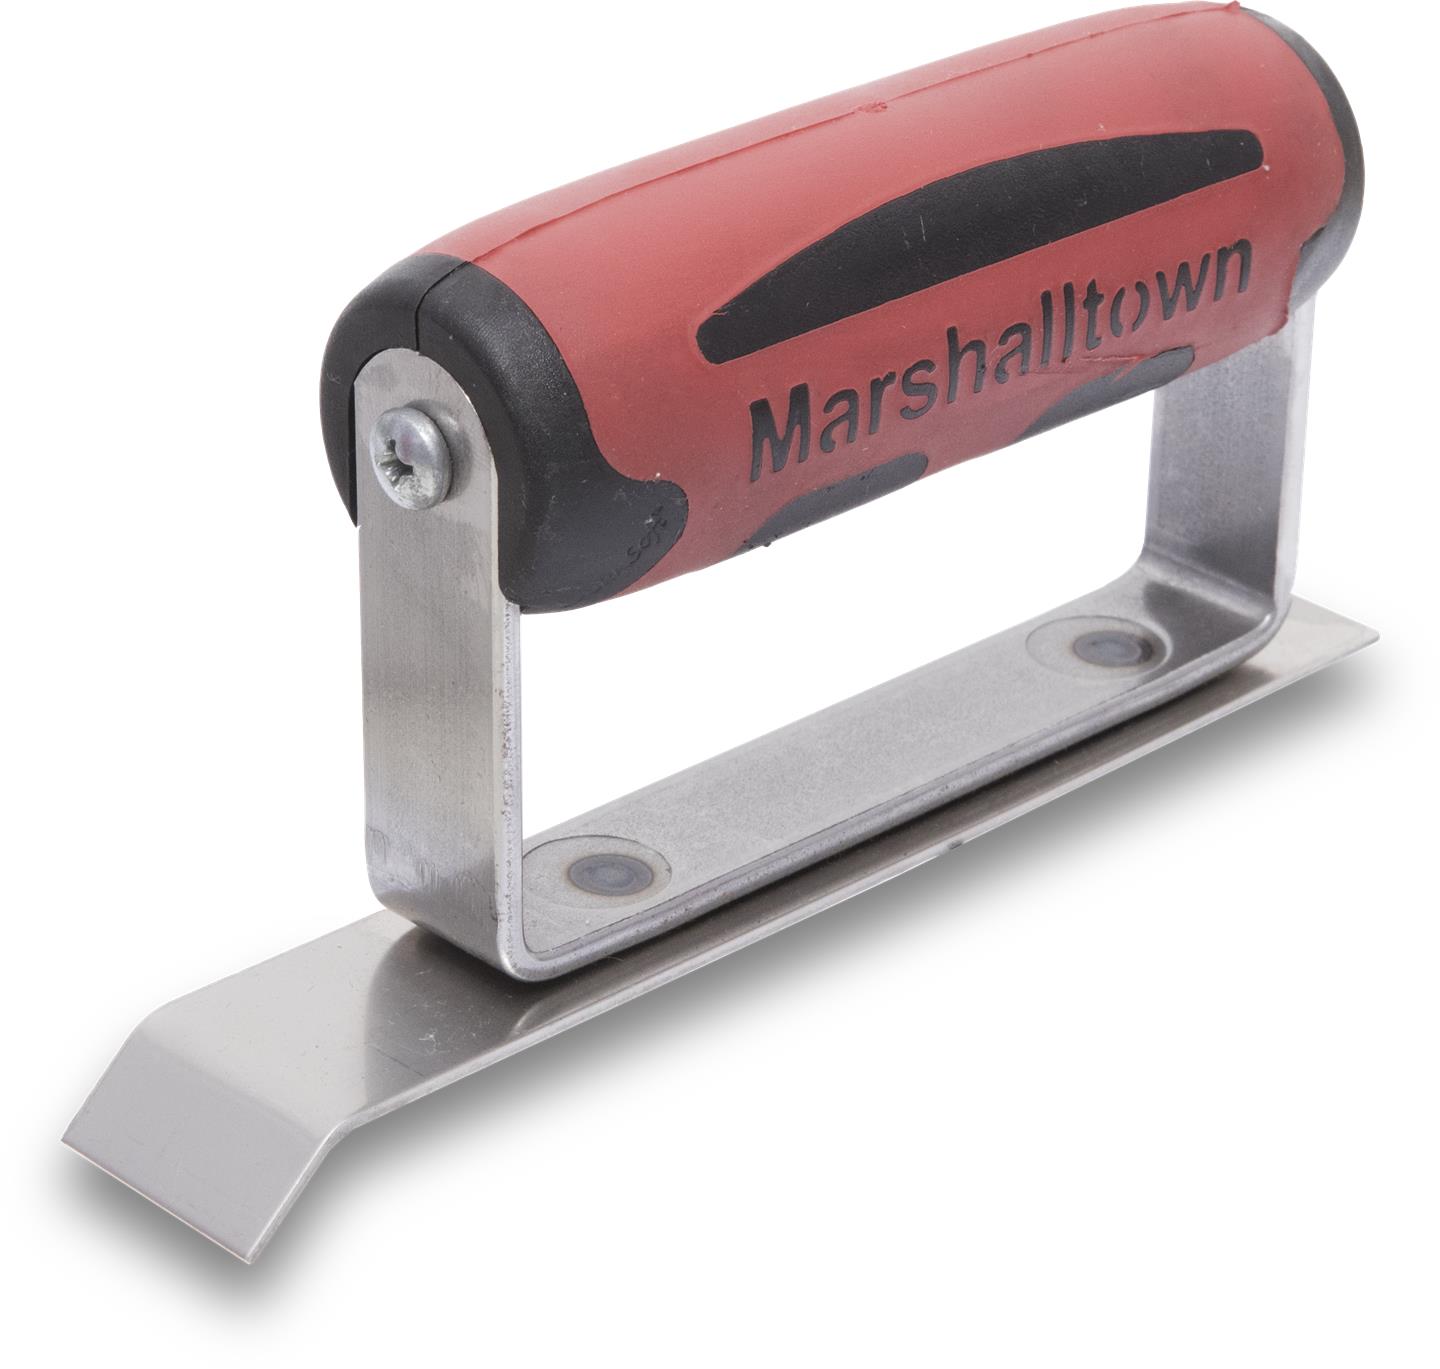 Marshalltown 14487 1 X 6 Concrete Stainless Steel Chamfer Edger-DuraSoft Handle; 1-2" Lip